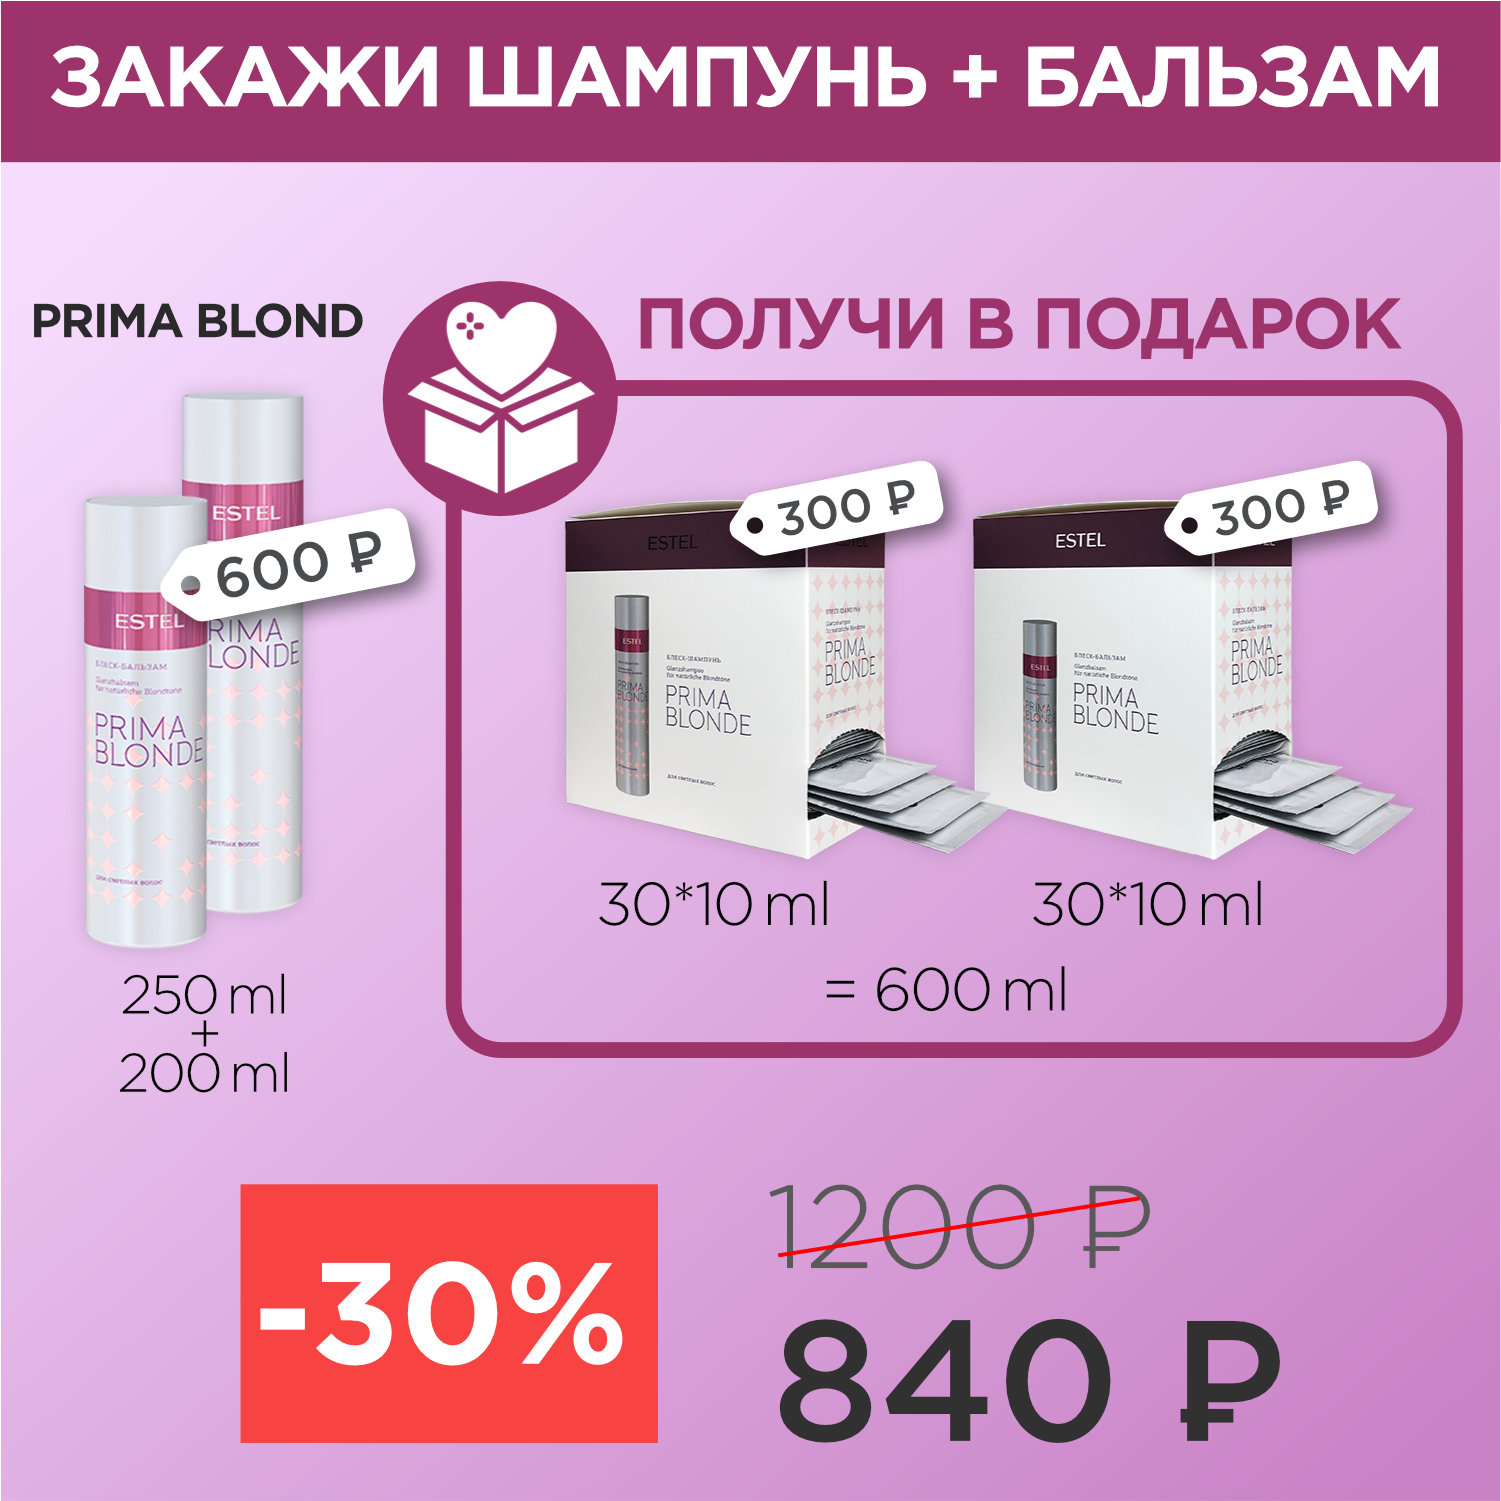 PRIMA BLOND для блеска шампунь+бальзам+2 саше бокса (840р)